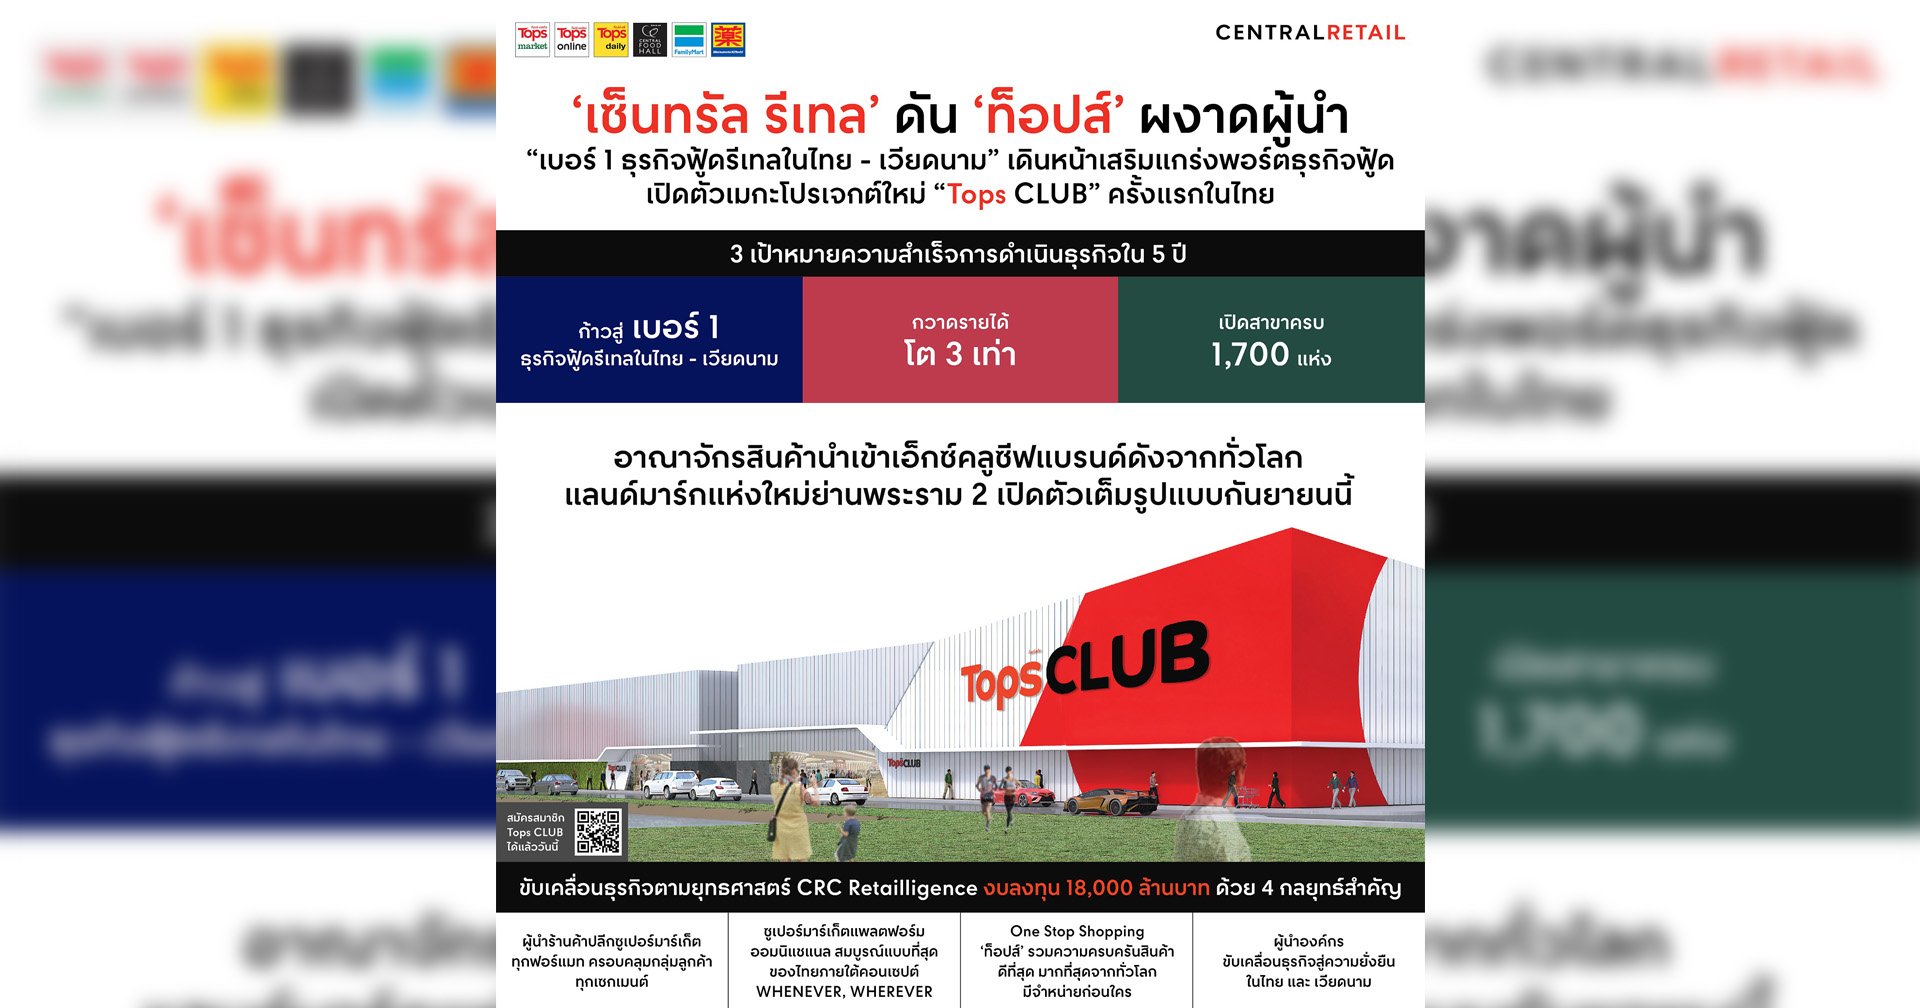 เซ็นทรัล รีเทล’ ดัน ‘ท็อปส์’ ผงาดผู้นำ “เบอร์ 1 ธุรกิจฟู้ดรีเทลในไทย – เวียดนาม”